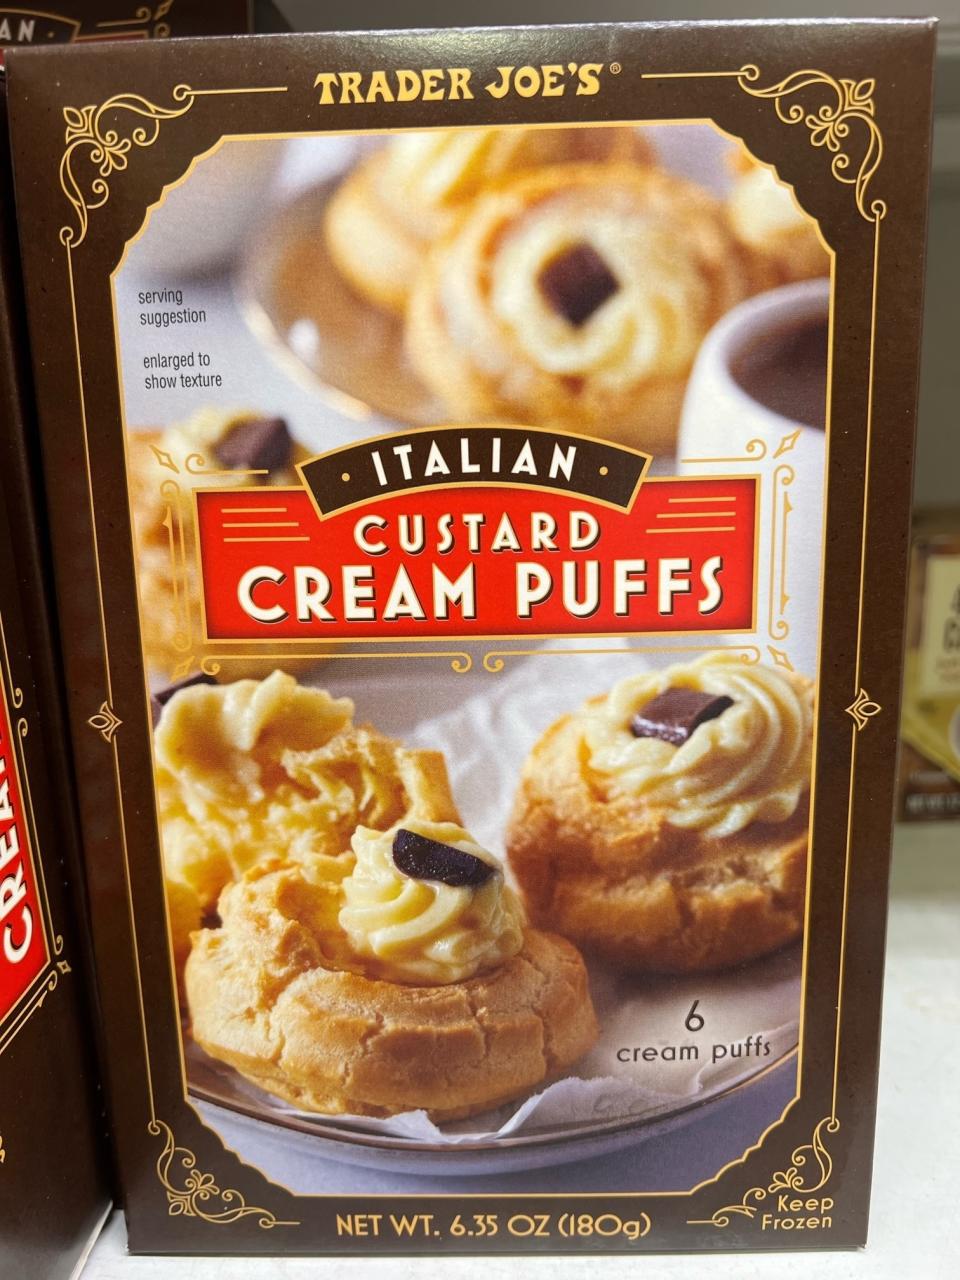 A box of Italian Custard Cream Puffs.